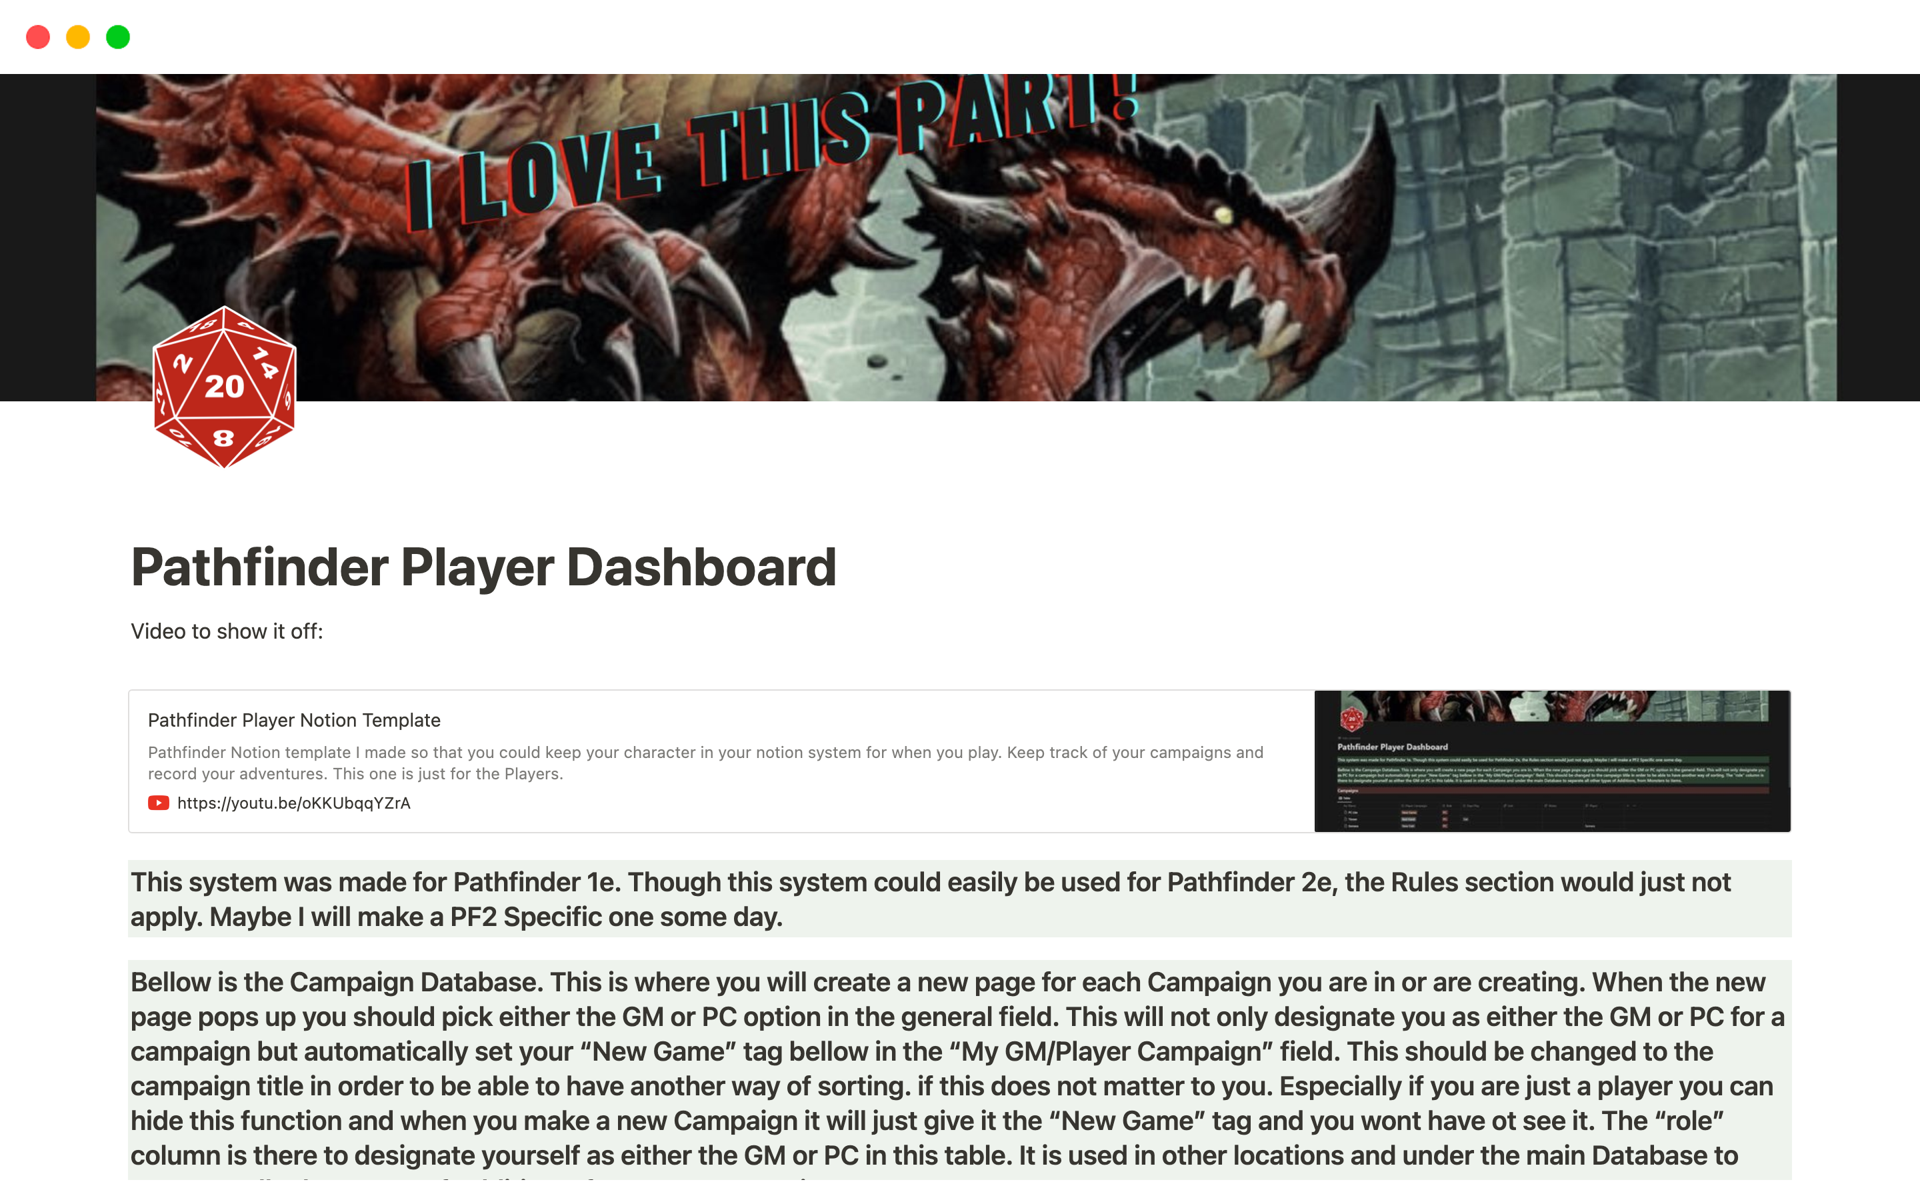 Vista previa de una plantilla para Pathfinder Player Dashboard